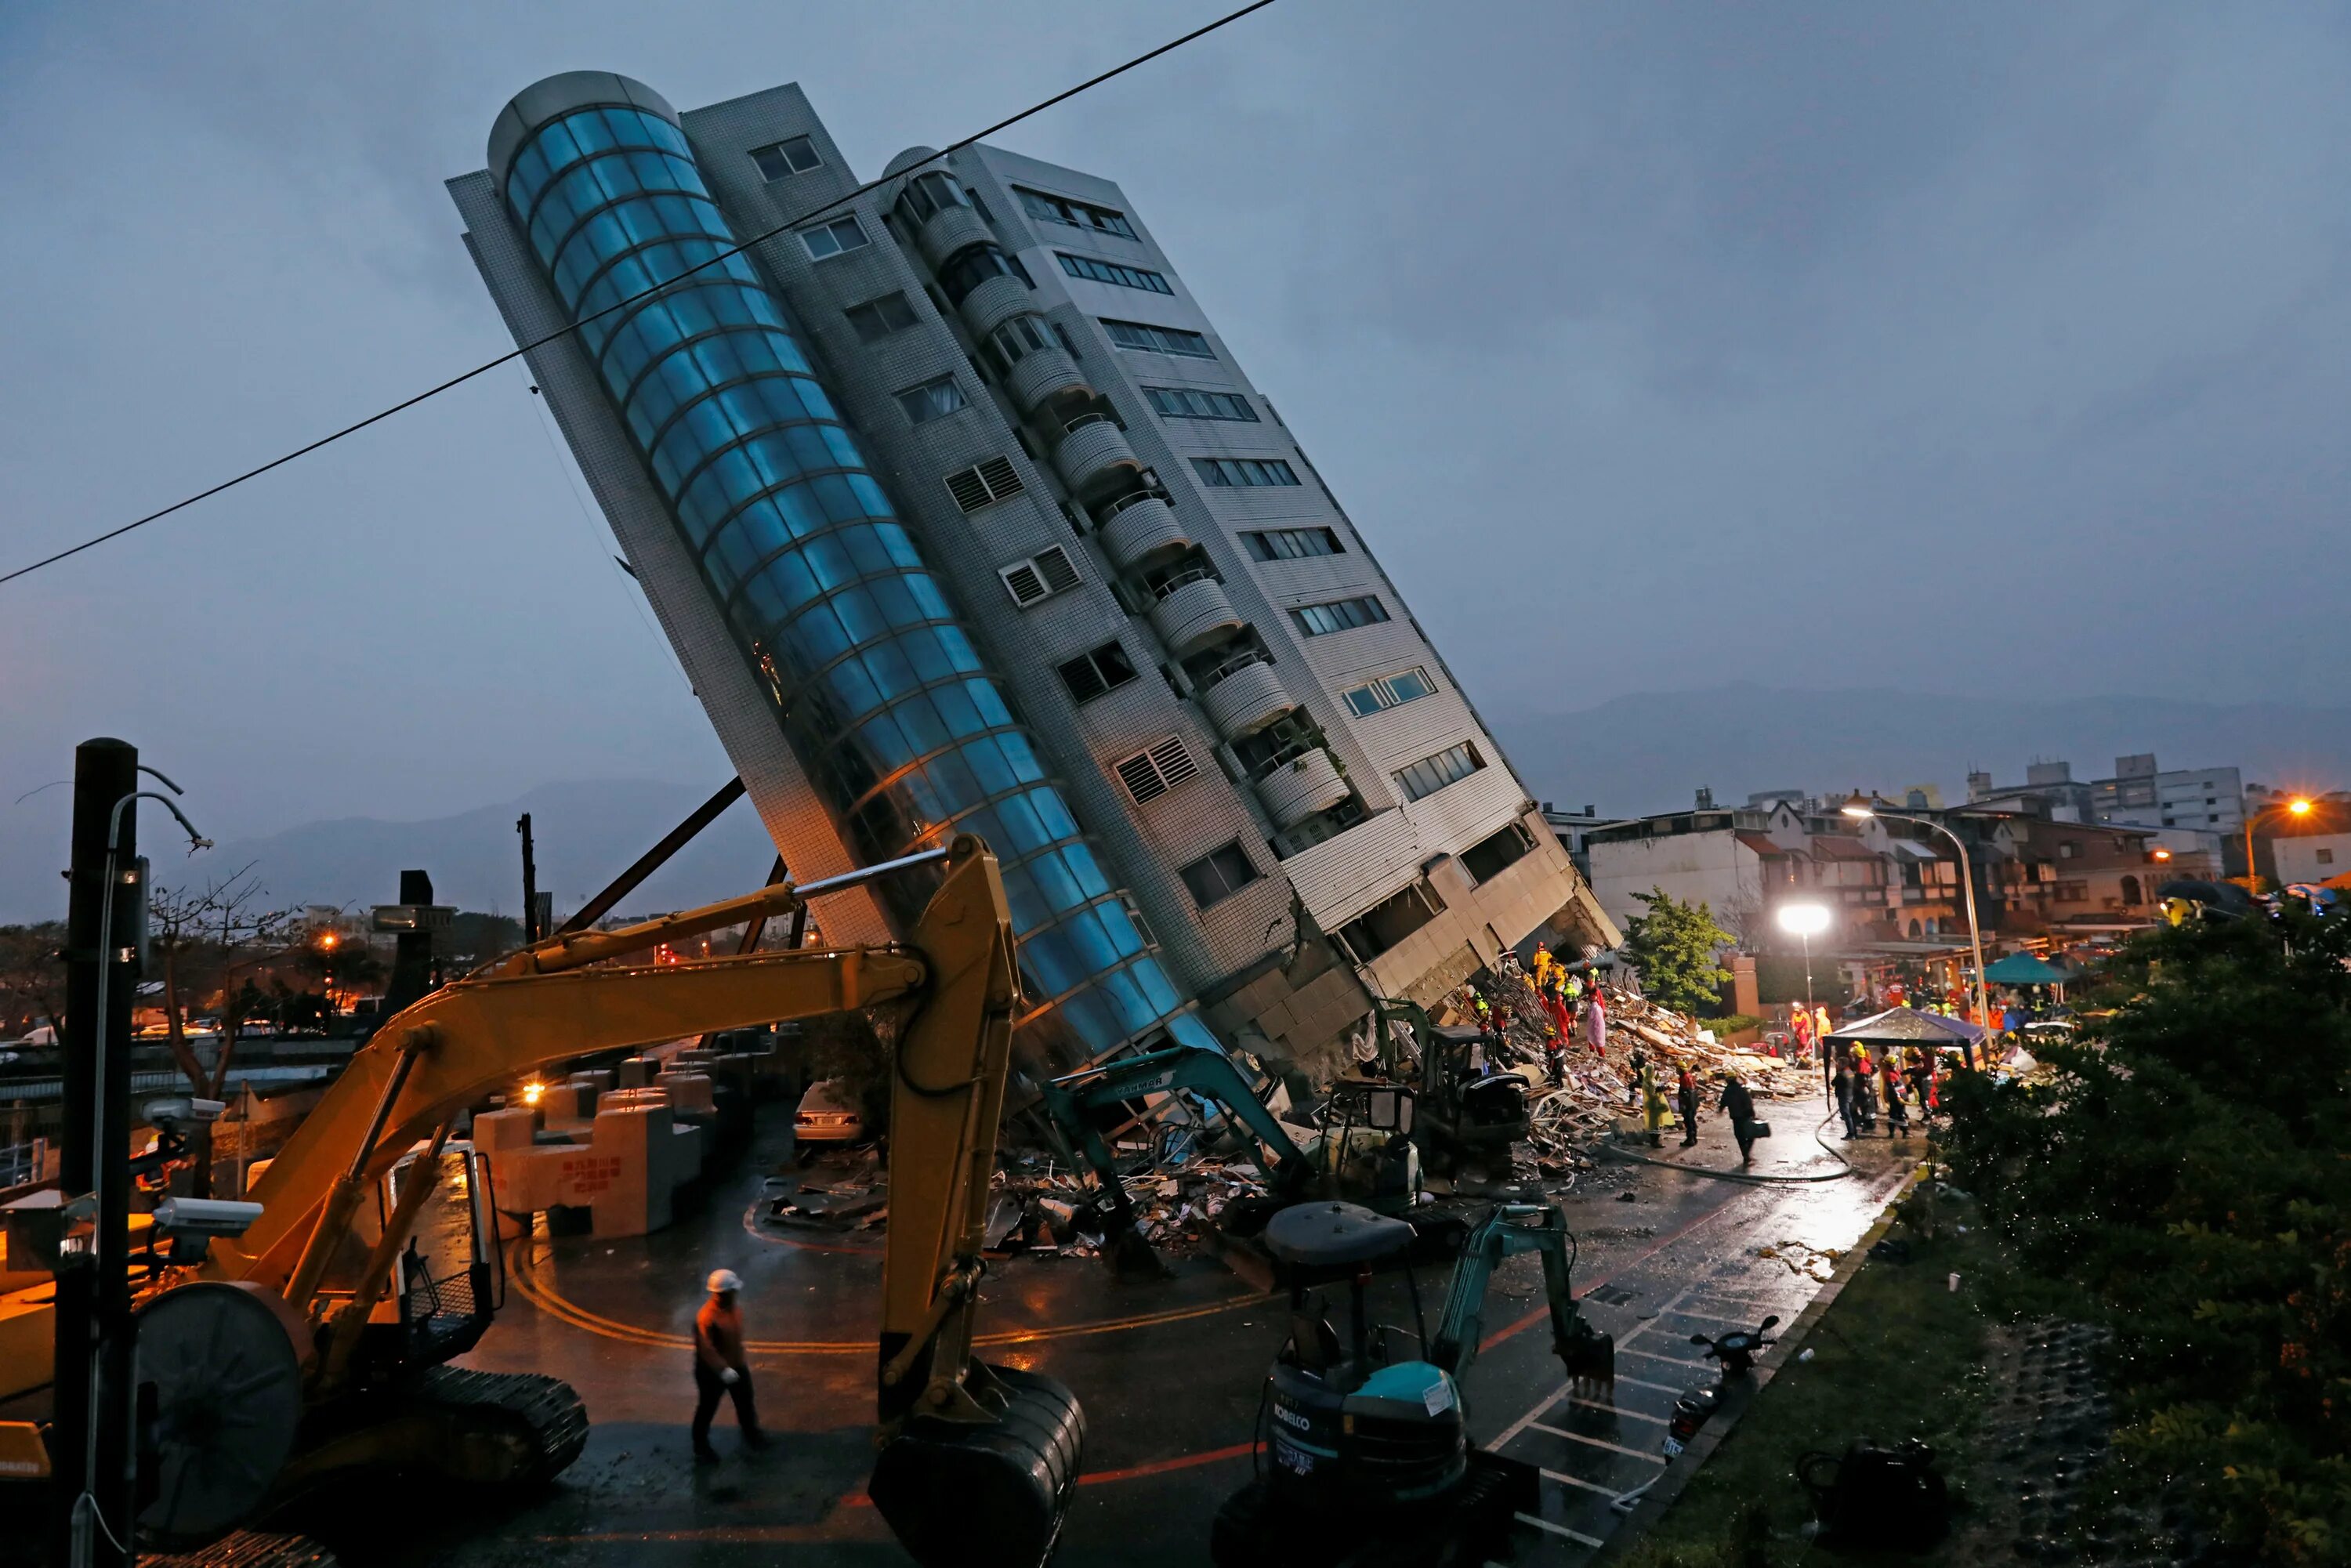 Землетрясение на Тайване 1999. Тайвань землетрясение 2018. Тайвань ЦУНАМИ. Жилой дом Тайвань 1999 землетрясение. Землетрясение tsmc